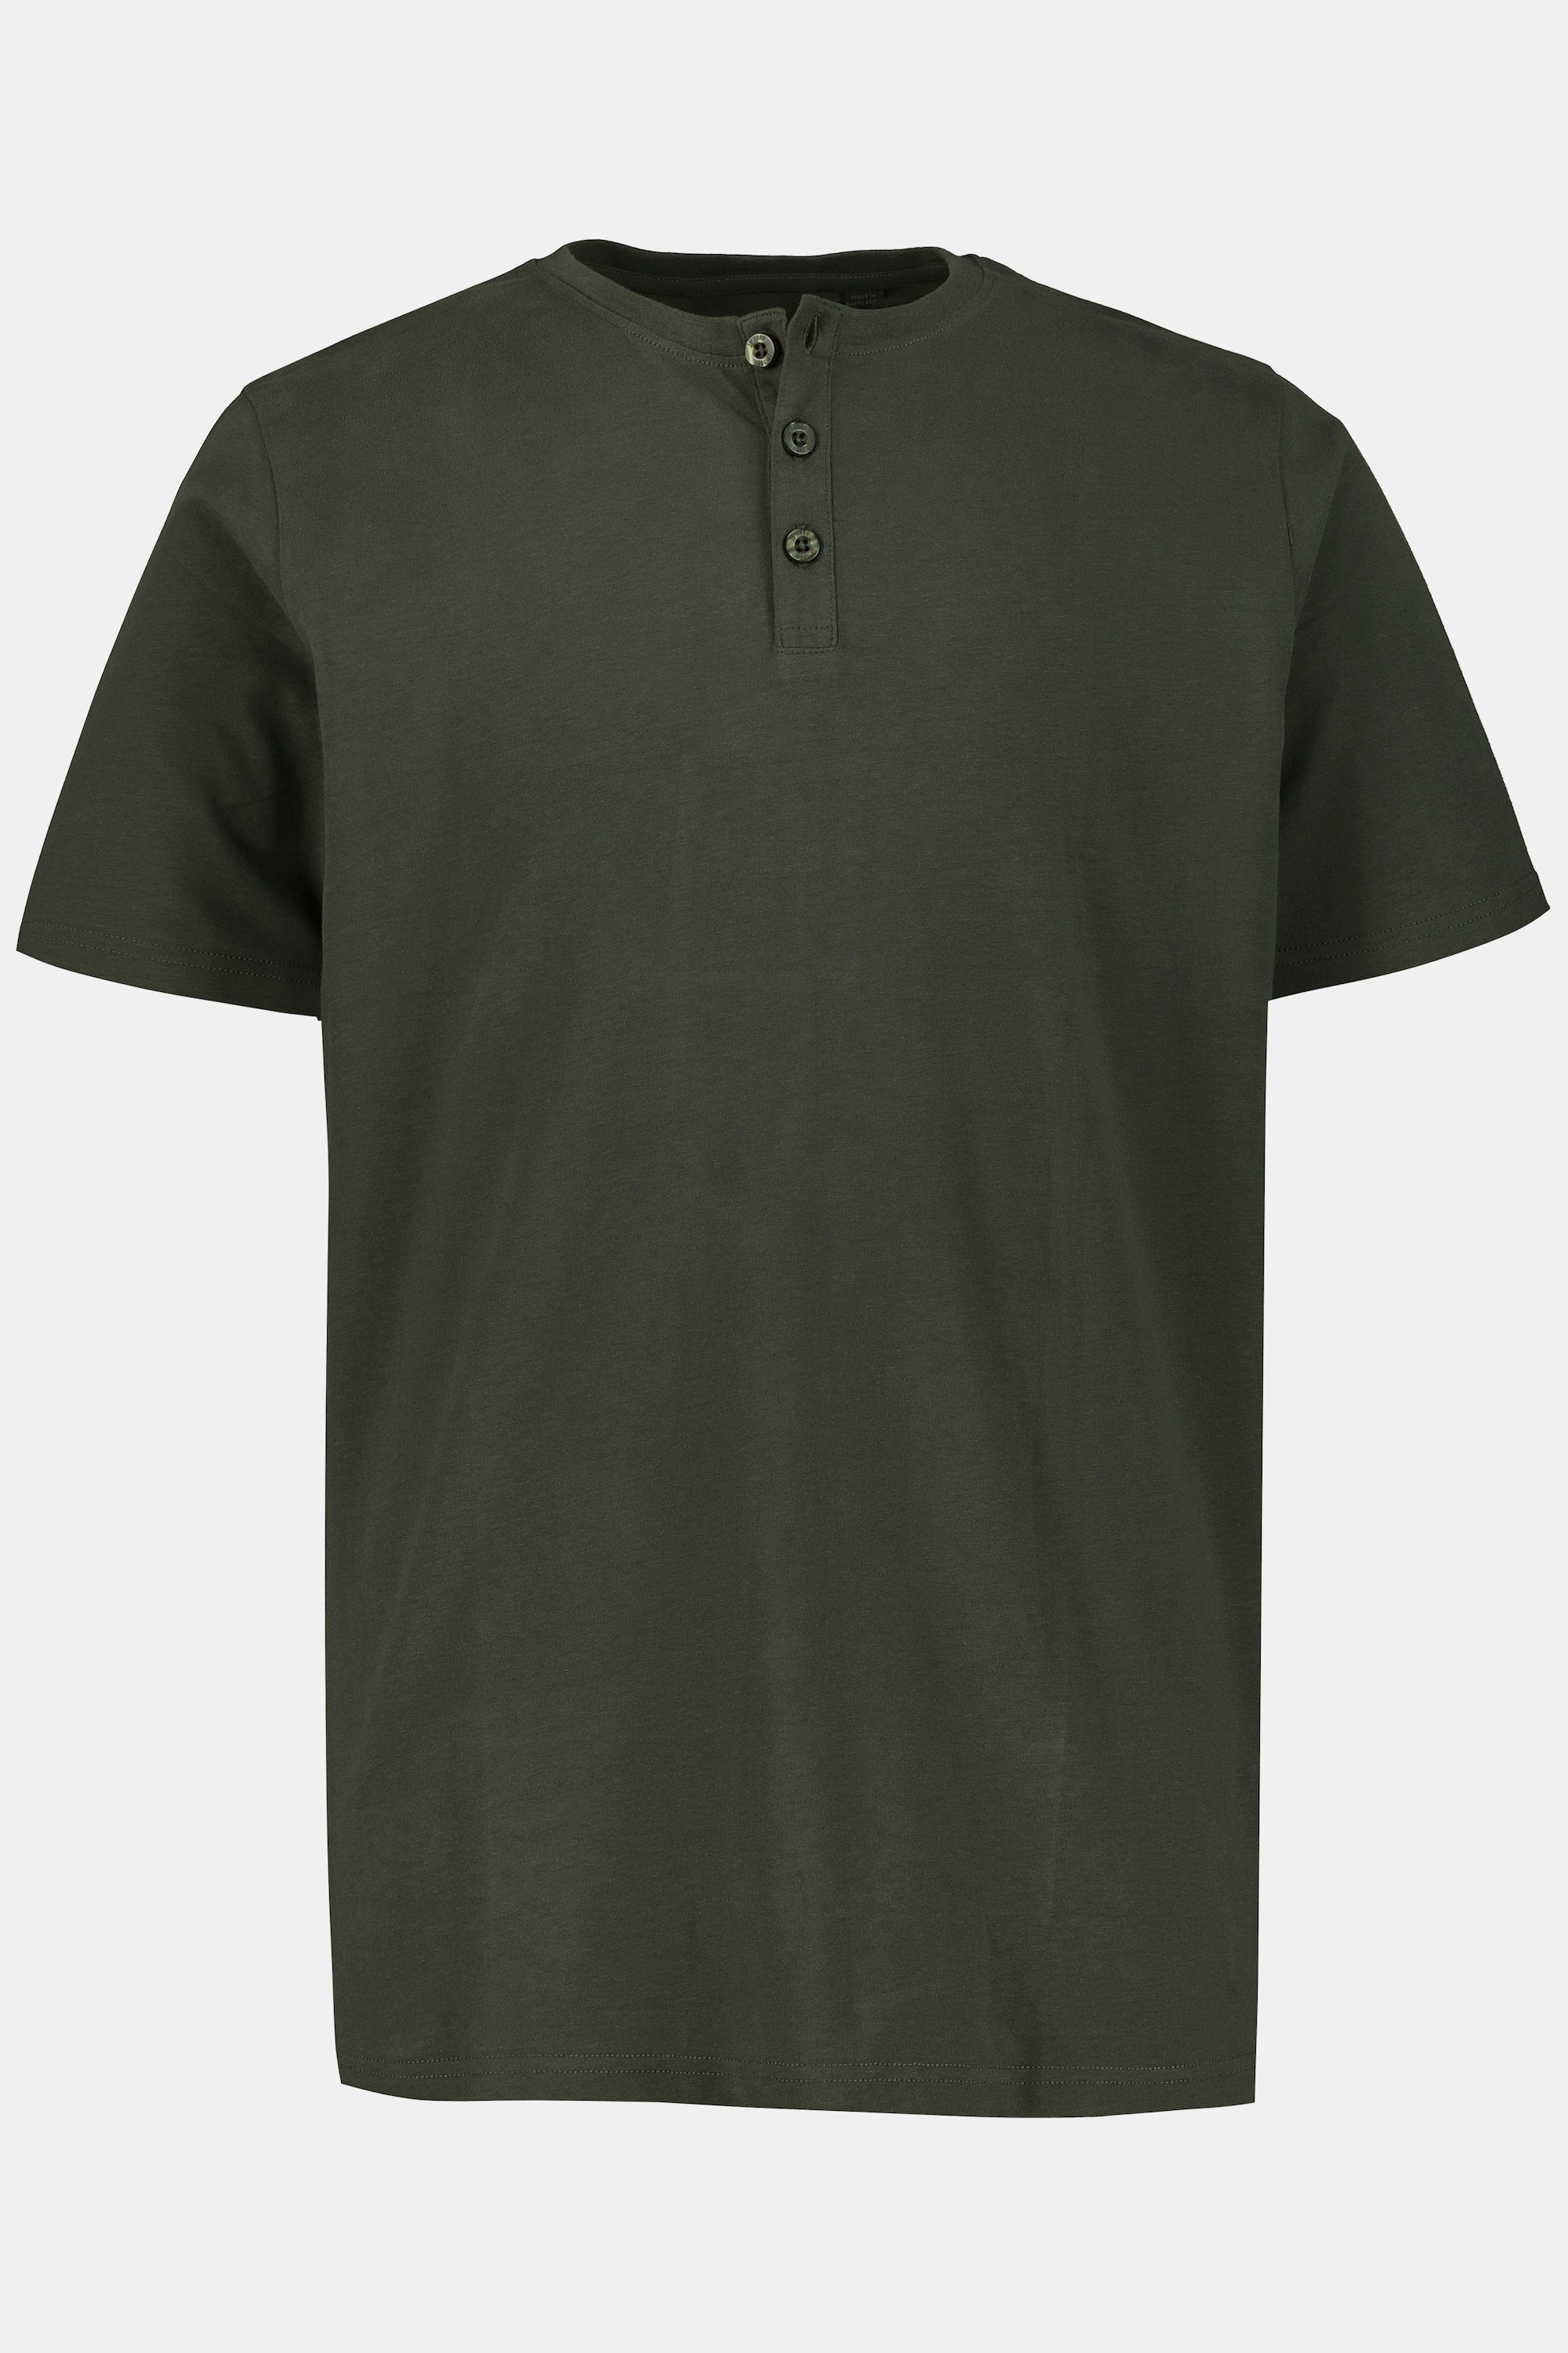 dunkel T-Shirt Henley oliv JP1880 Halbarm Knopfleiste Basic